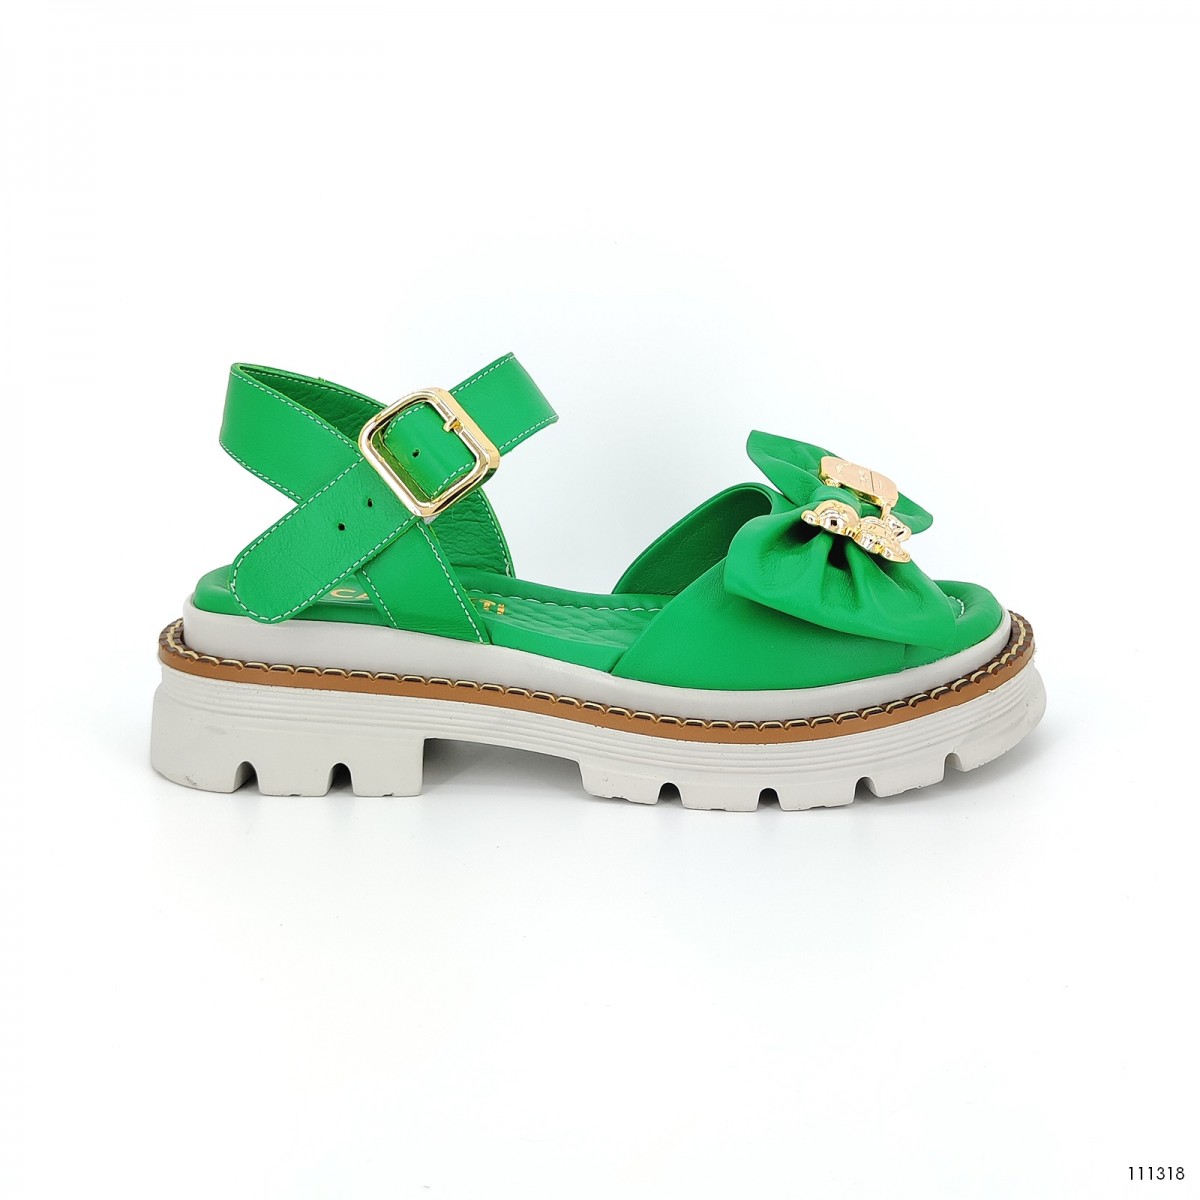  женские сандали на платформе летние Casoreti  зелёный 